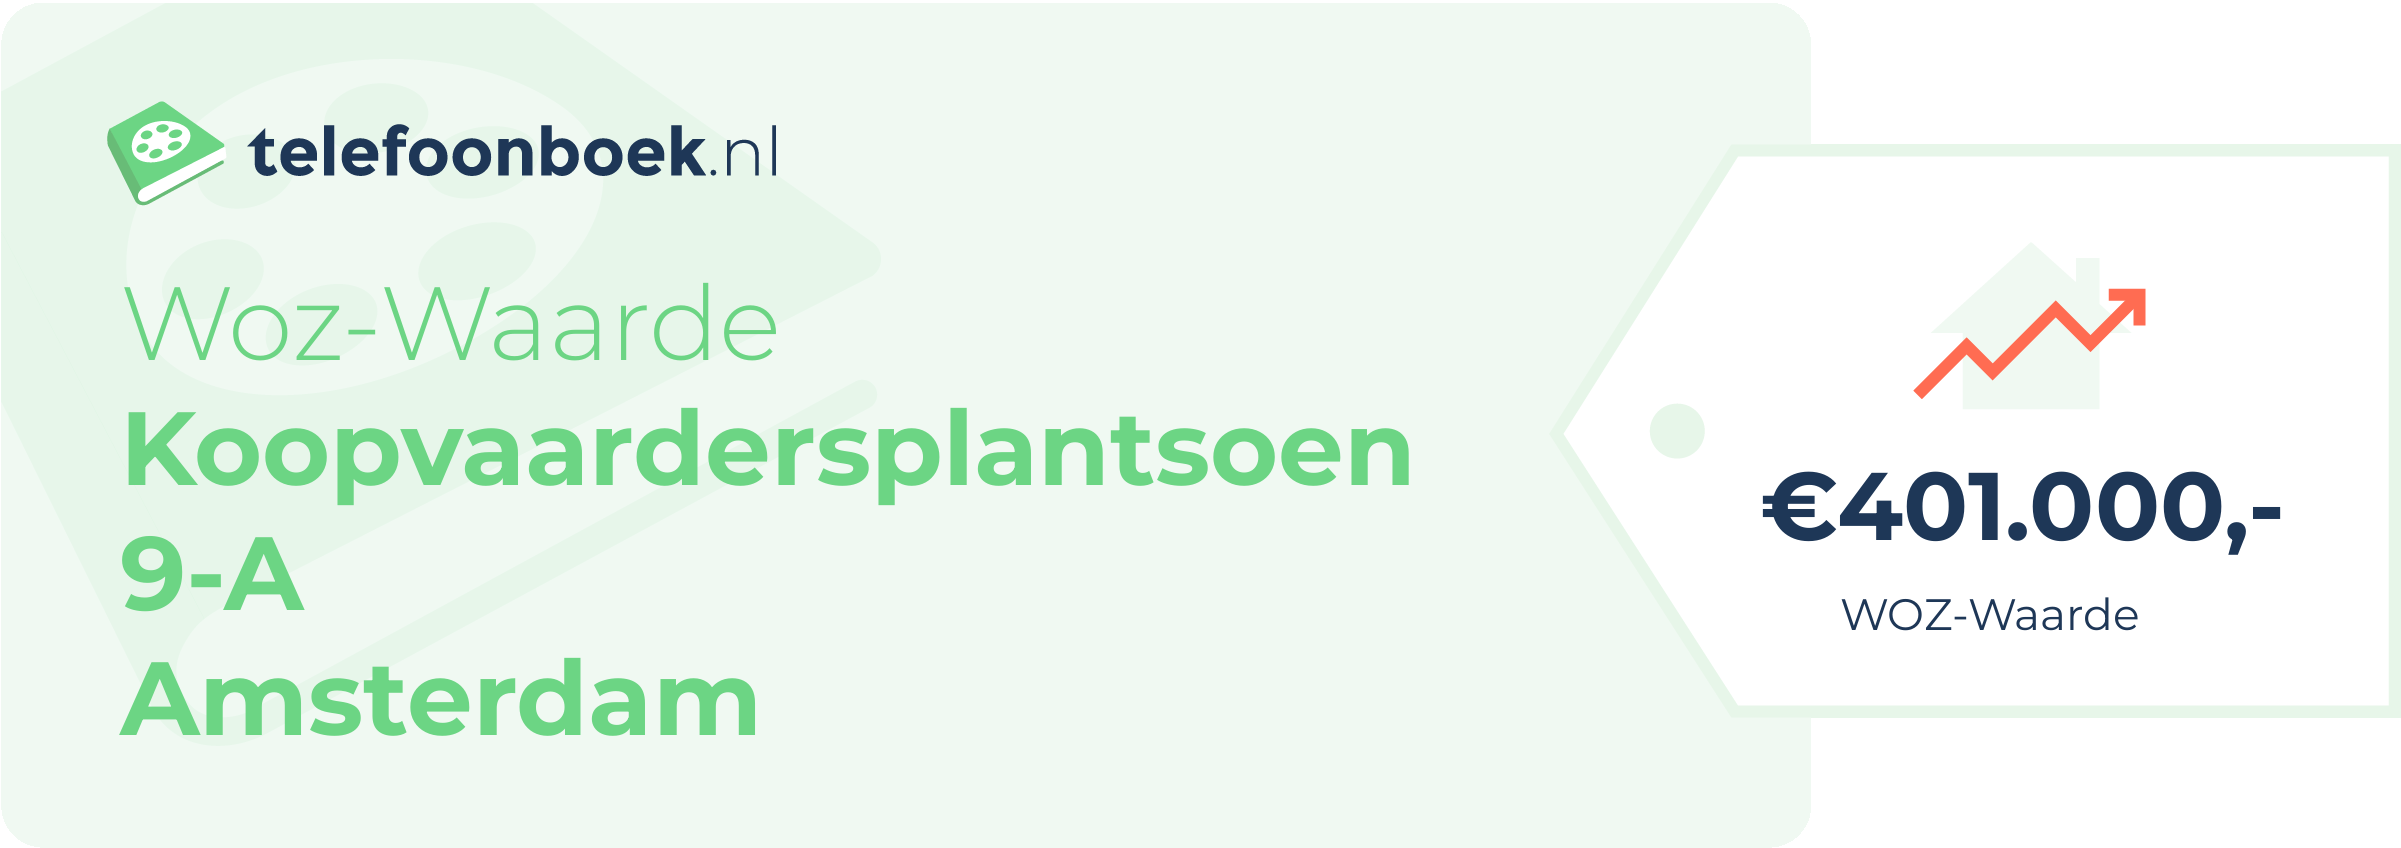 WOZ-waarde Koopvaardersplantsoen 9-A Amsterdam